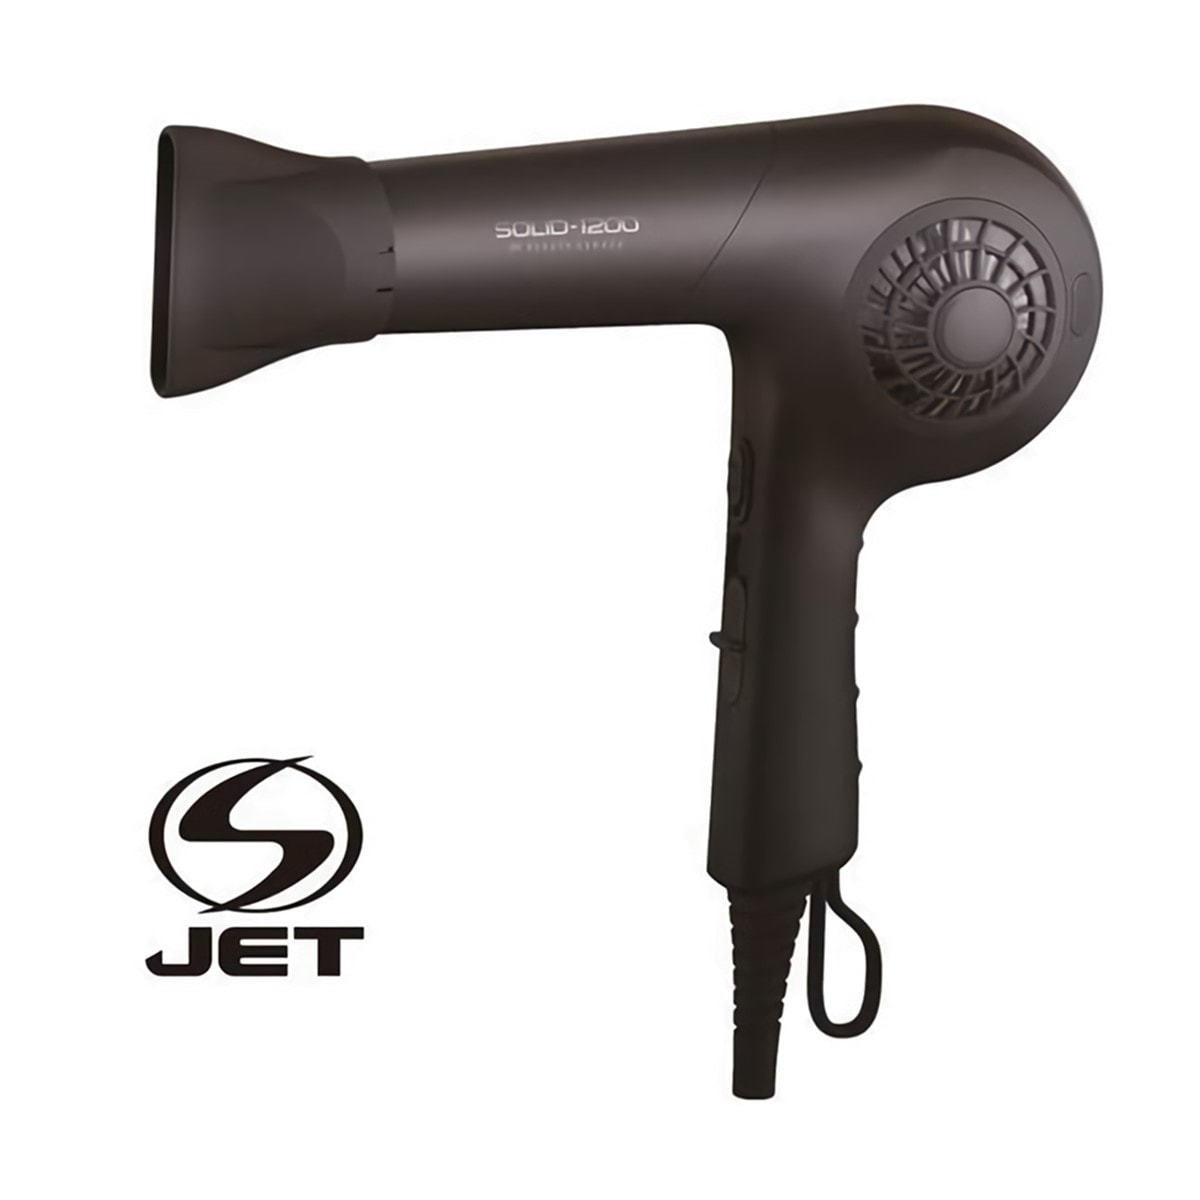 S-JET認証取得】プロフェッショナルヘアドライヤーSOLID-1200 （1200W